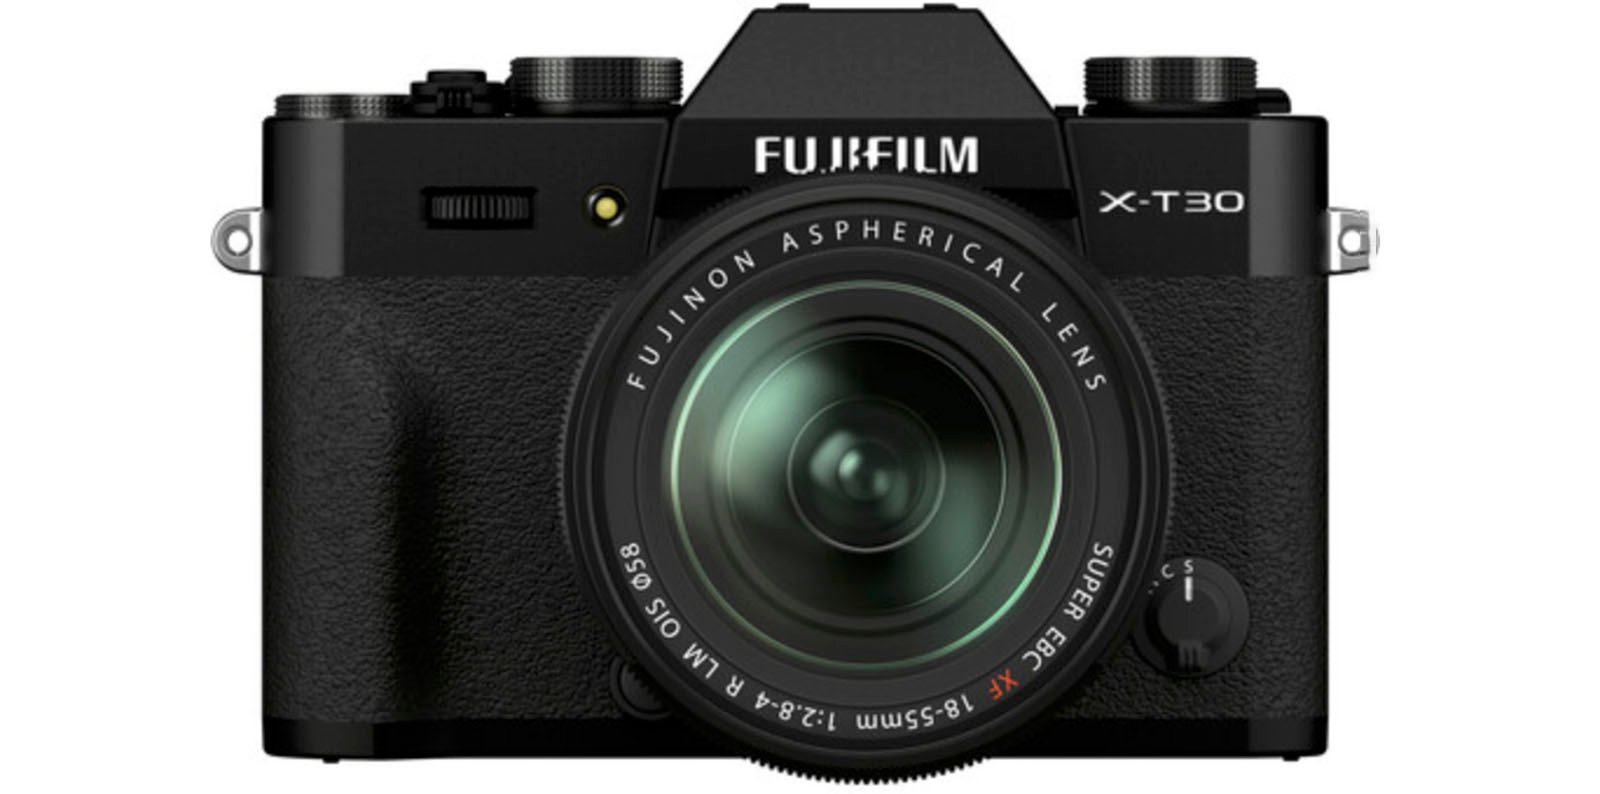 منظر أمامي لكاميرا Fujifilm X-D30 الرقمية مع عدسة Fujinon شبه الكروية.  الجسم أسود بشكل أساسي، مع أزرار وأقراص مختلفة.  18-55 ملم، 1:2.8-4 R LM OIS: تحتوي العدسة على نص يشير إلى مواصفاتها.